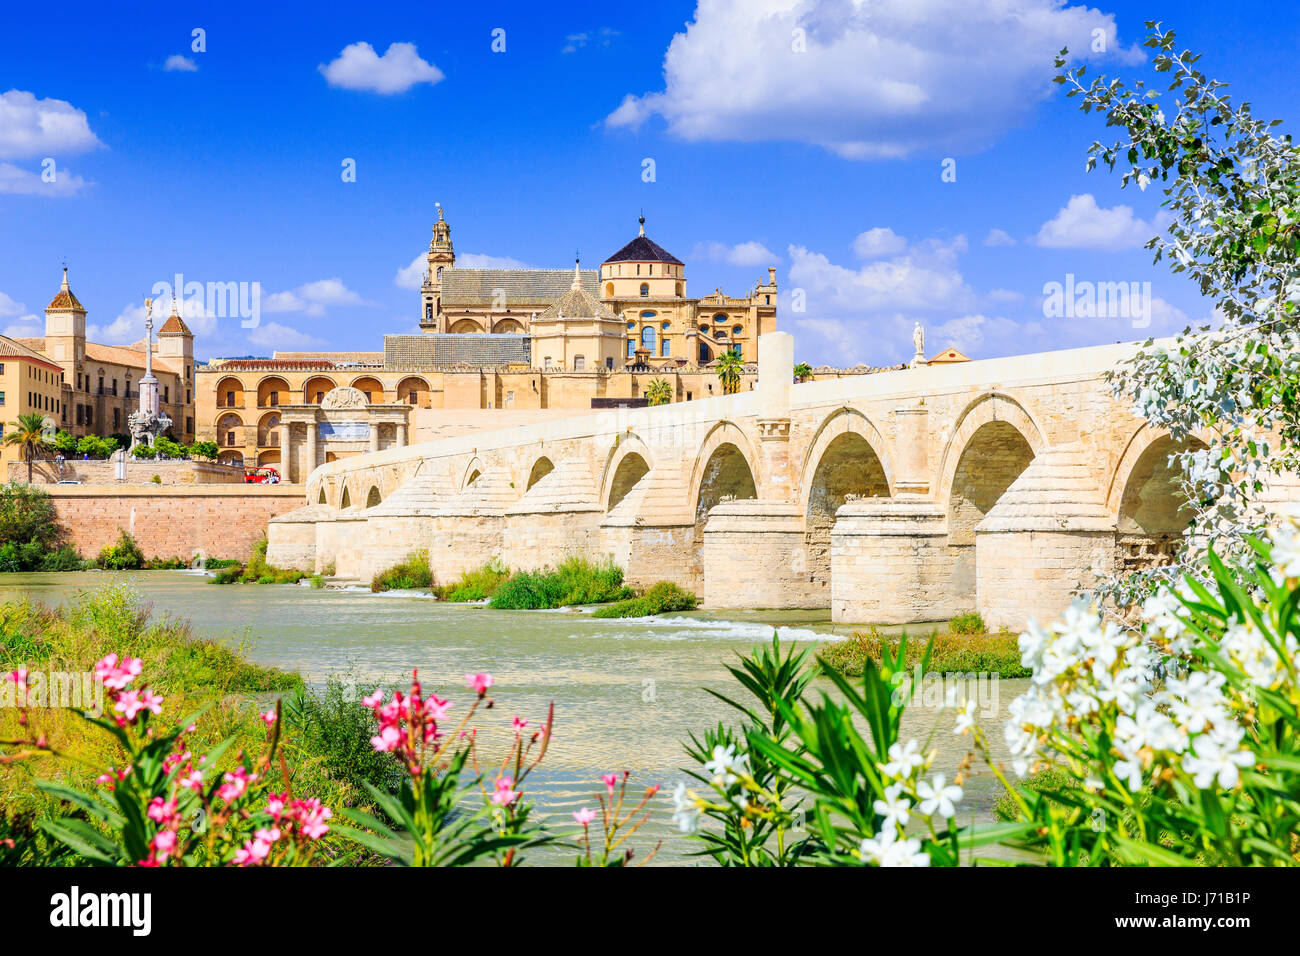 Cordoba, Spagna. Il ponte romano e la moschea (cattedrale) sul fiume Guadalquivir. Foto Stock